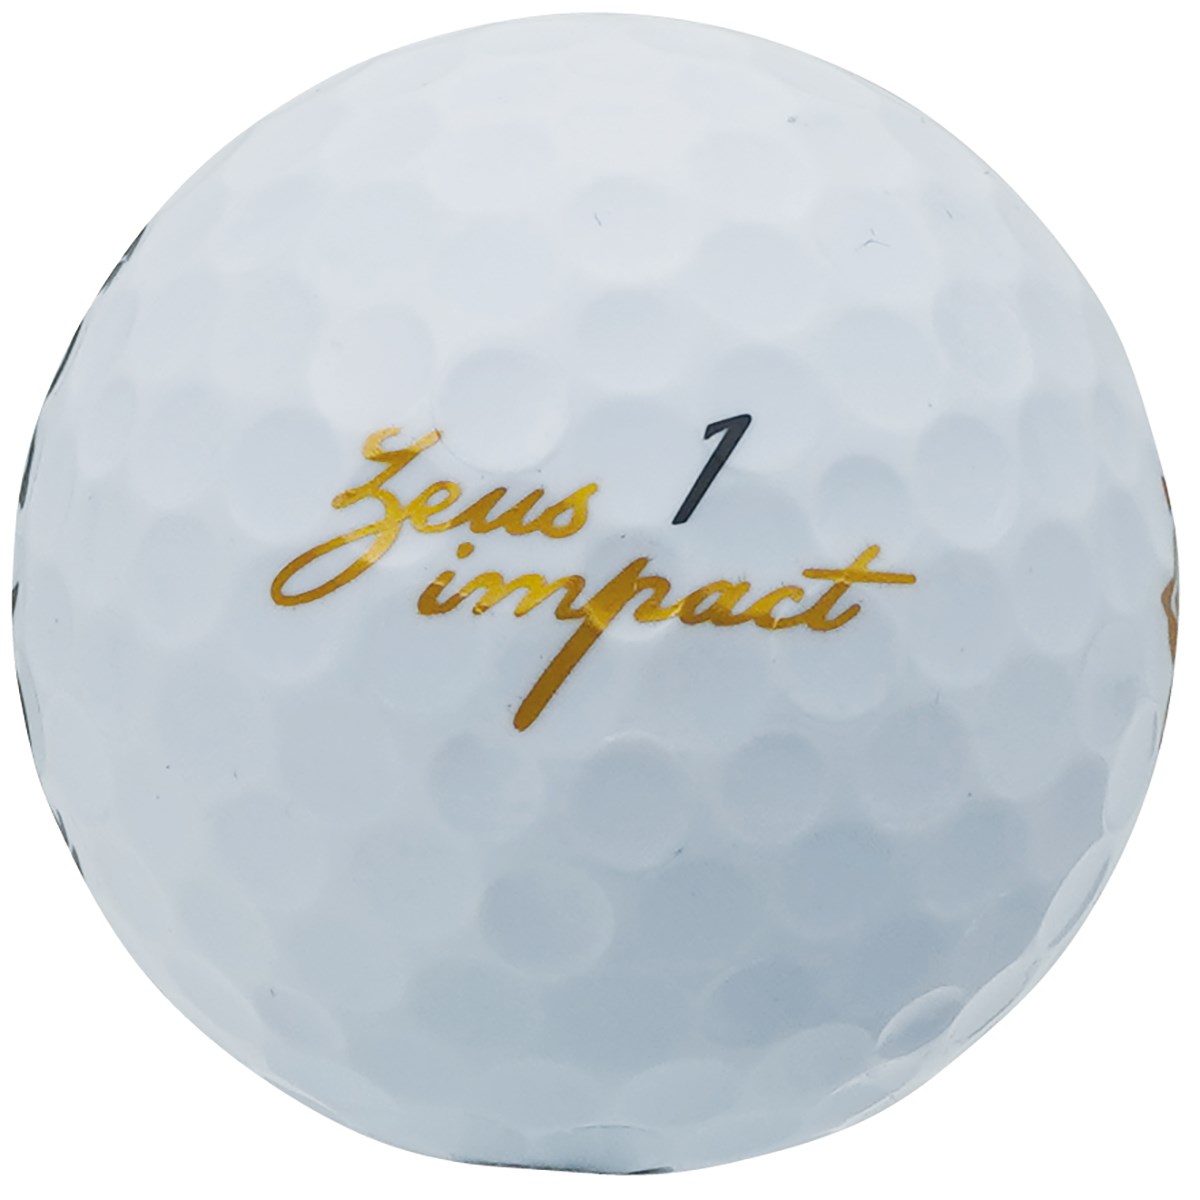 Dショッピング キャスコ Zeus Impact Zeusimpact2 ボール 5ダースセット 5ダース 60個入り ホワイト 非公認球 カテゴリ ゴルフボールの販売できる商品 Gdoゴルフショップ ドコモの通販サイト